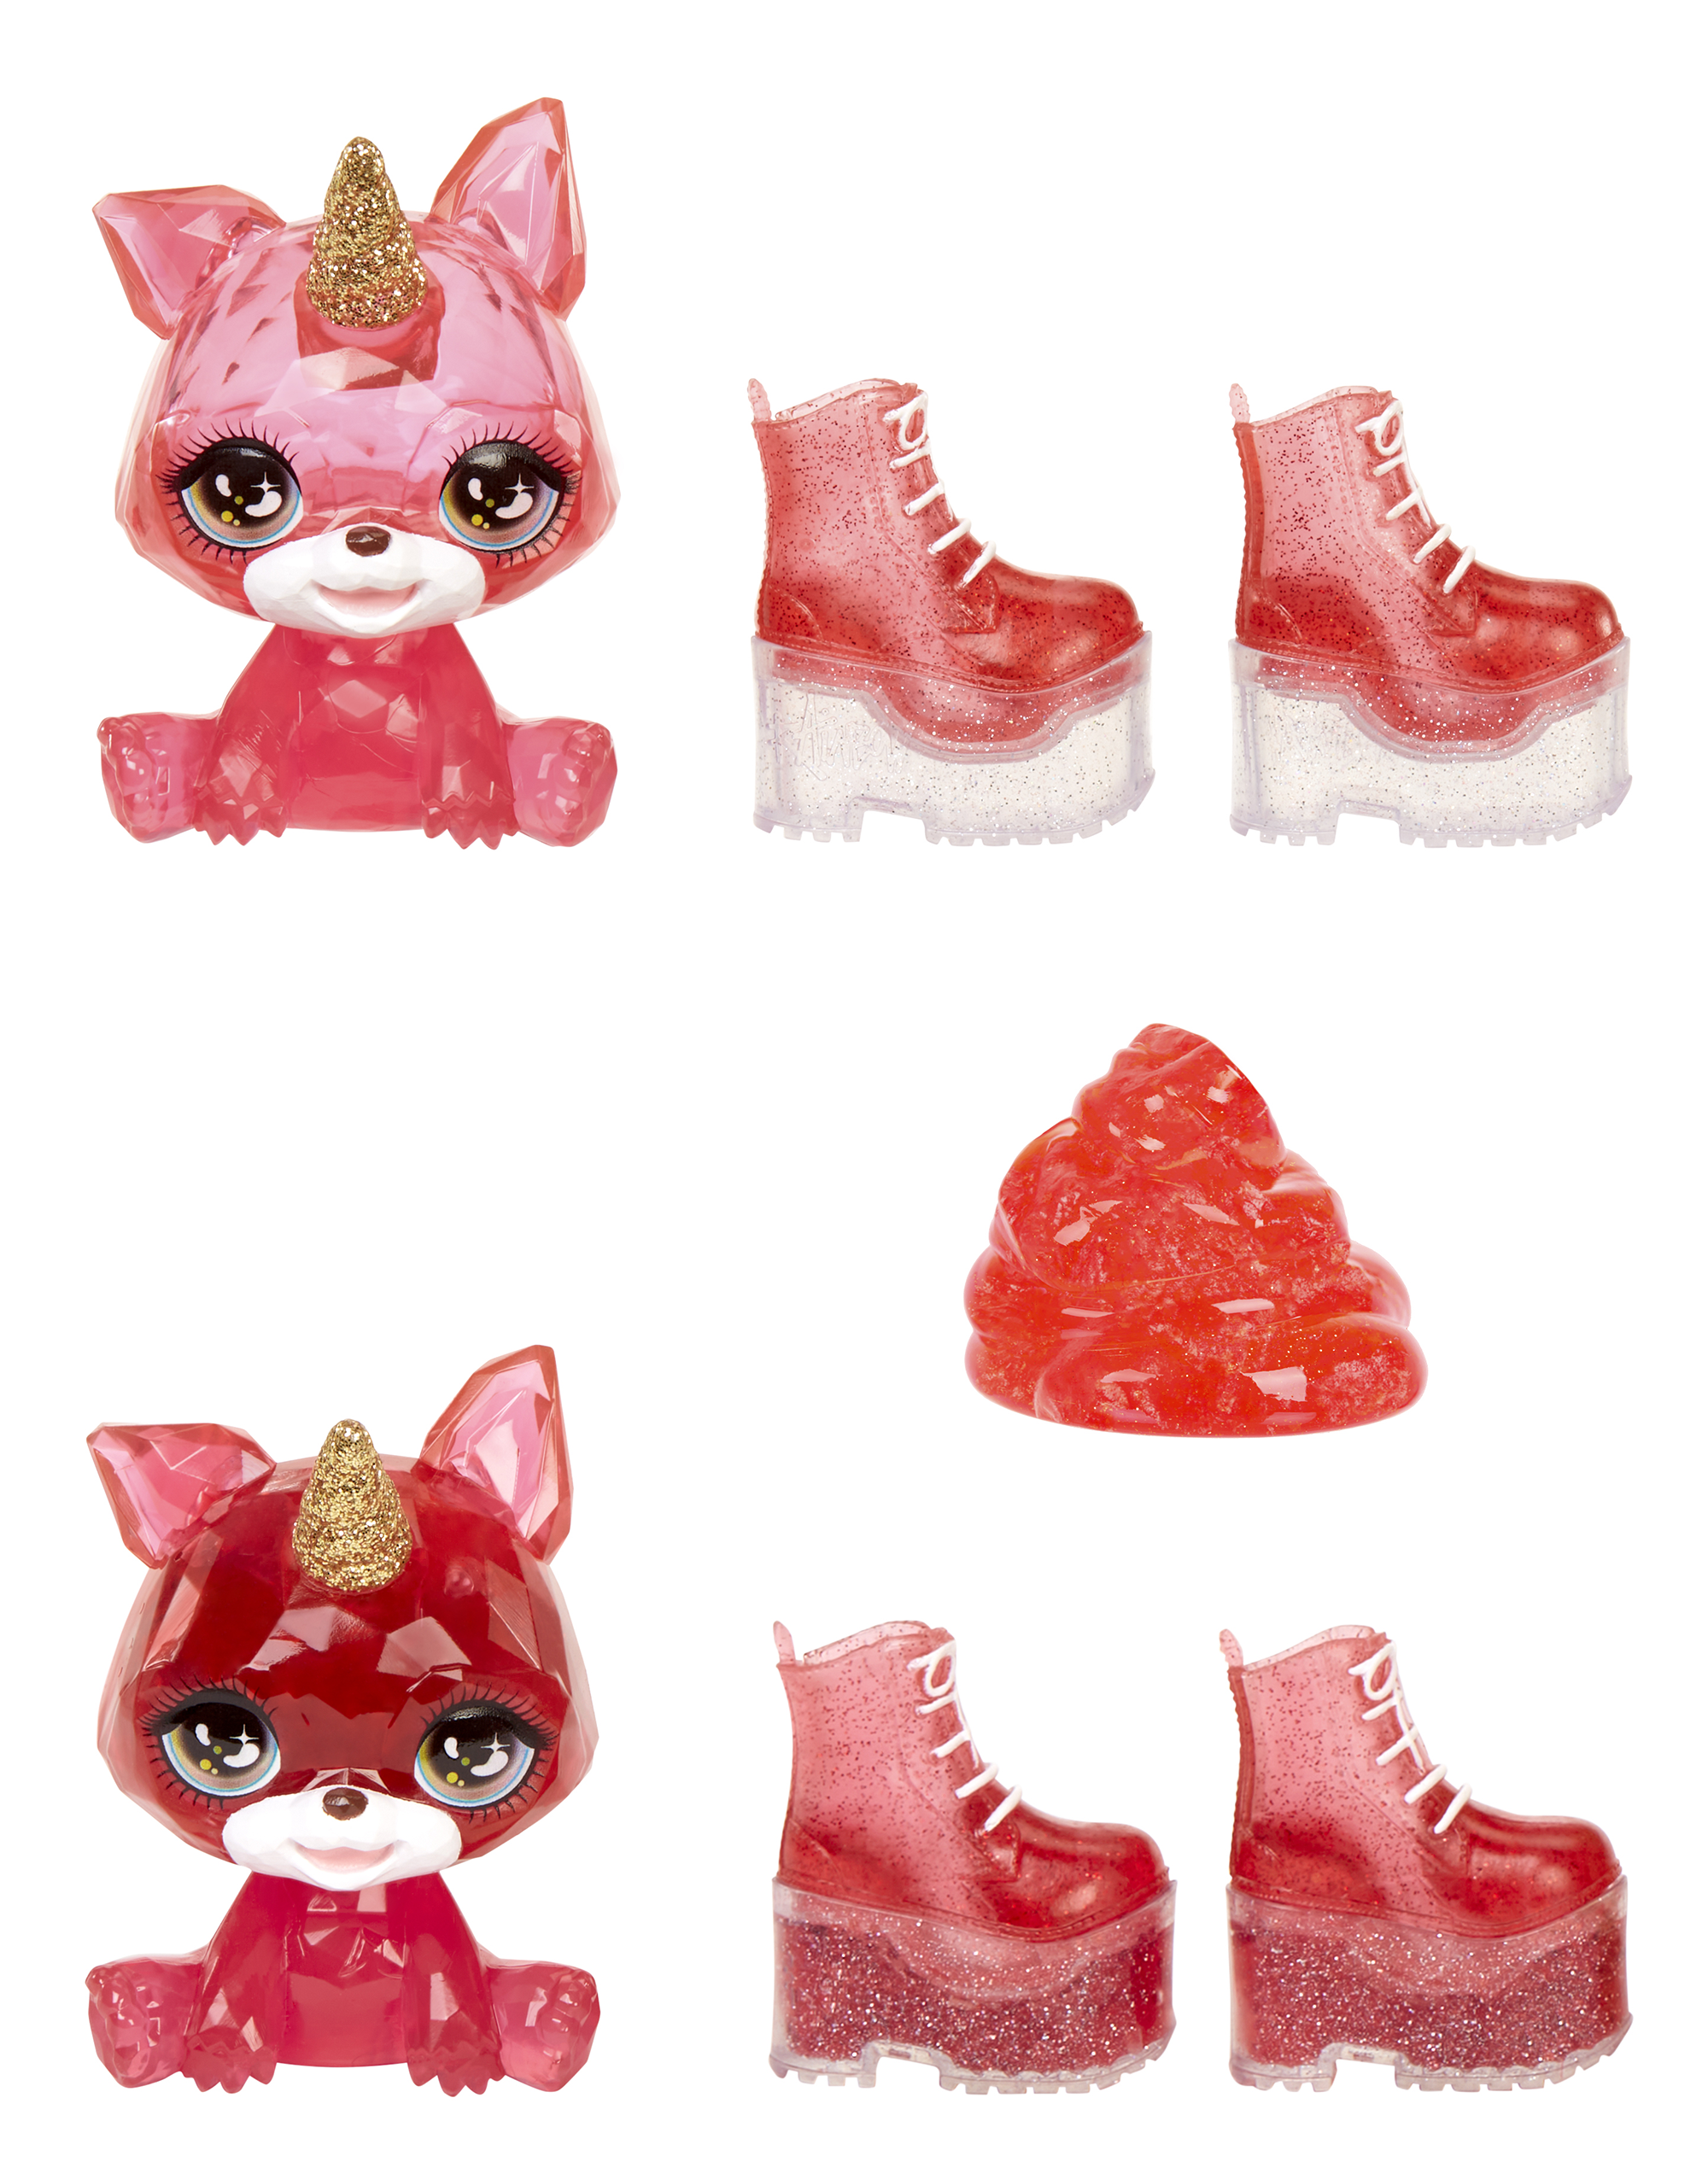 Rainbow high fashion doll con slime  & cucciolo – ruby (rosso) - bambola scintillante da 28 cm con slime, animale magico e accessori alla moda - Rainbow High